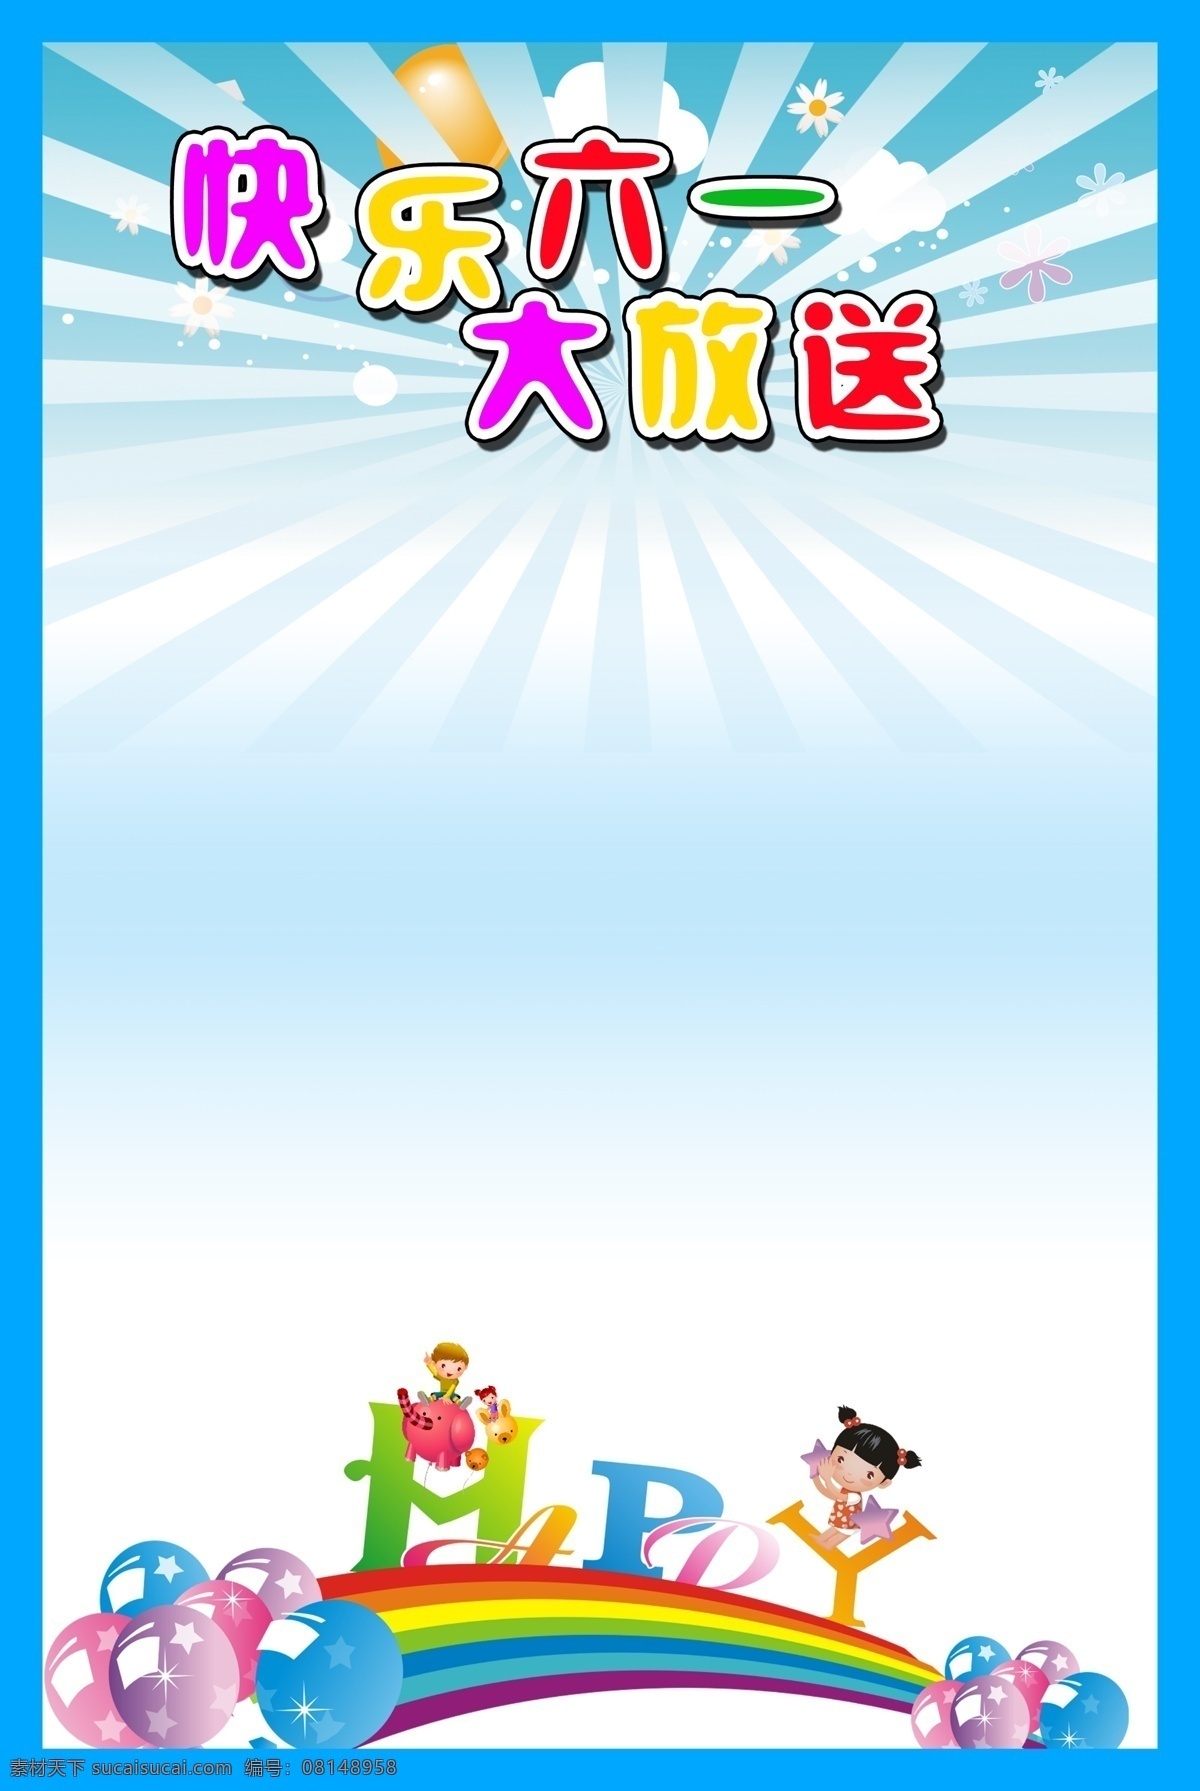 彩虹 儿童节 节日素材 气球 小孩 源文件 快乐 六 一大 放送 模板下载 六一儿童节